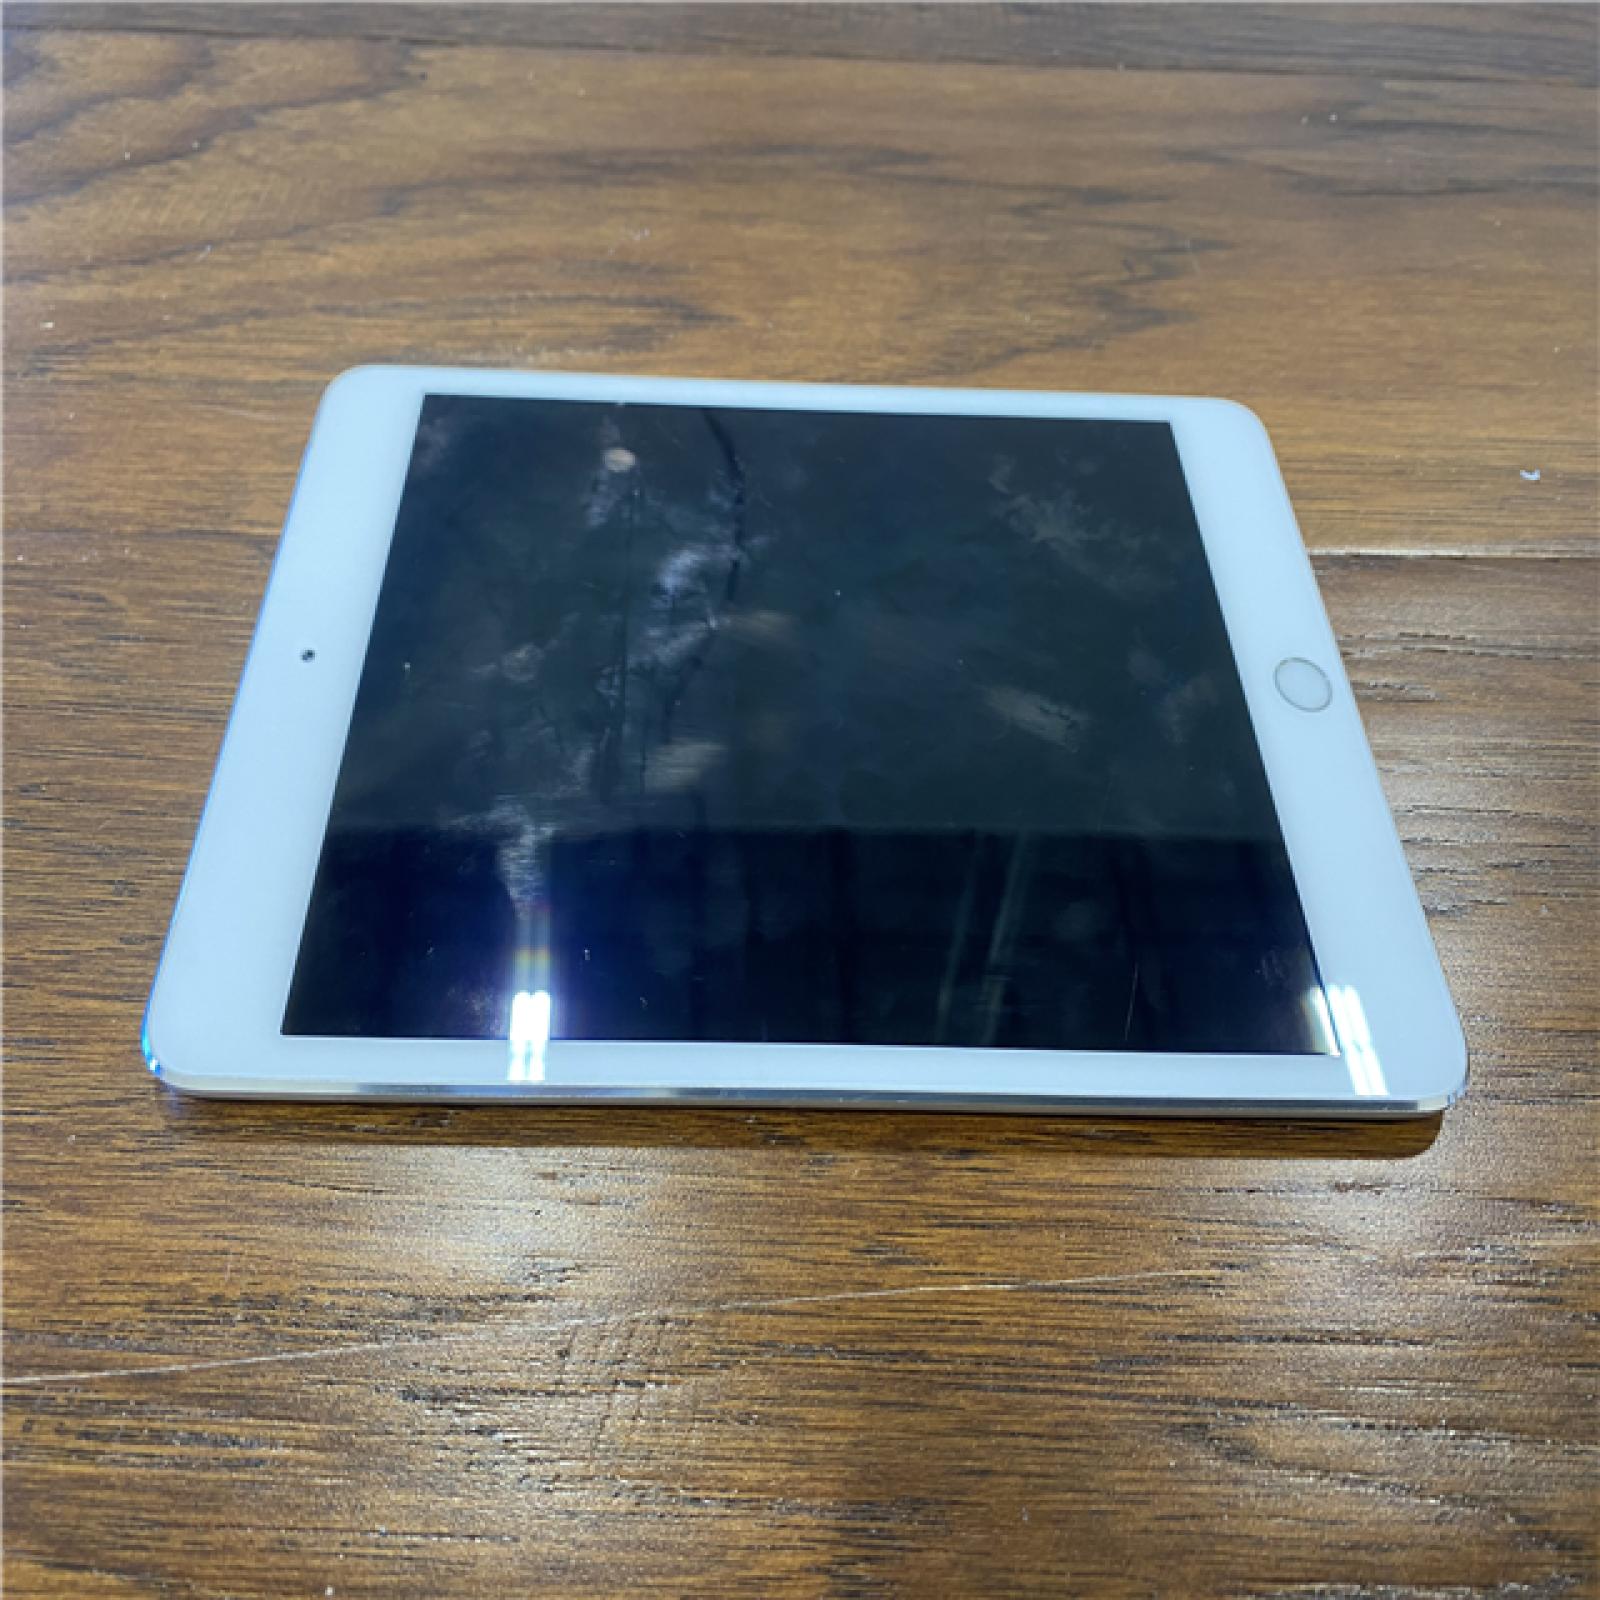 Apple iPad Mini 4 Wi-Fi + Cellular - Tablet - 16GB - Gray